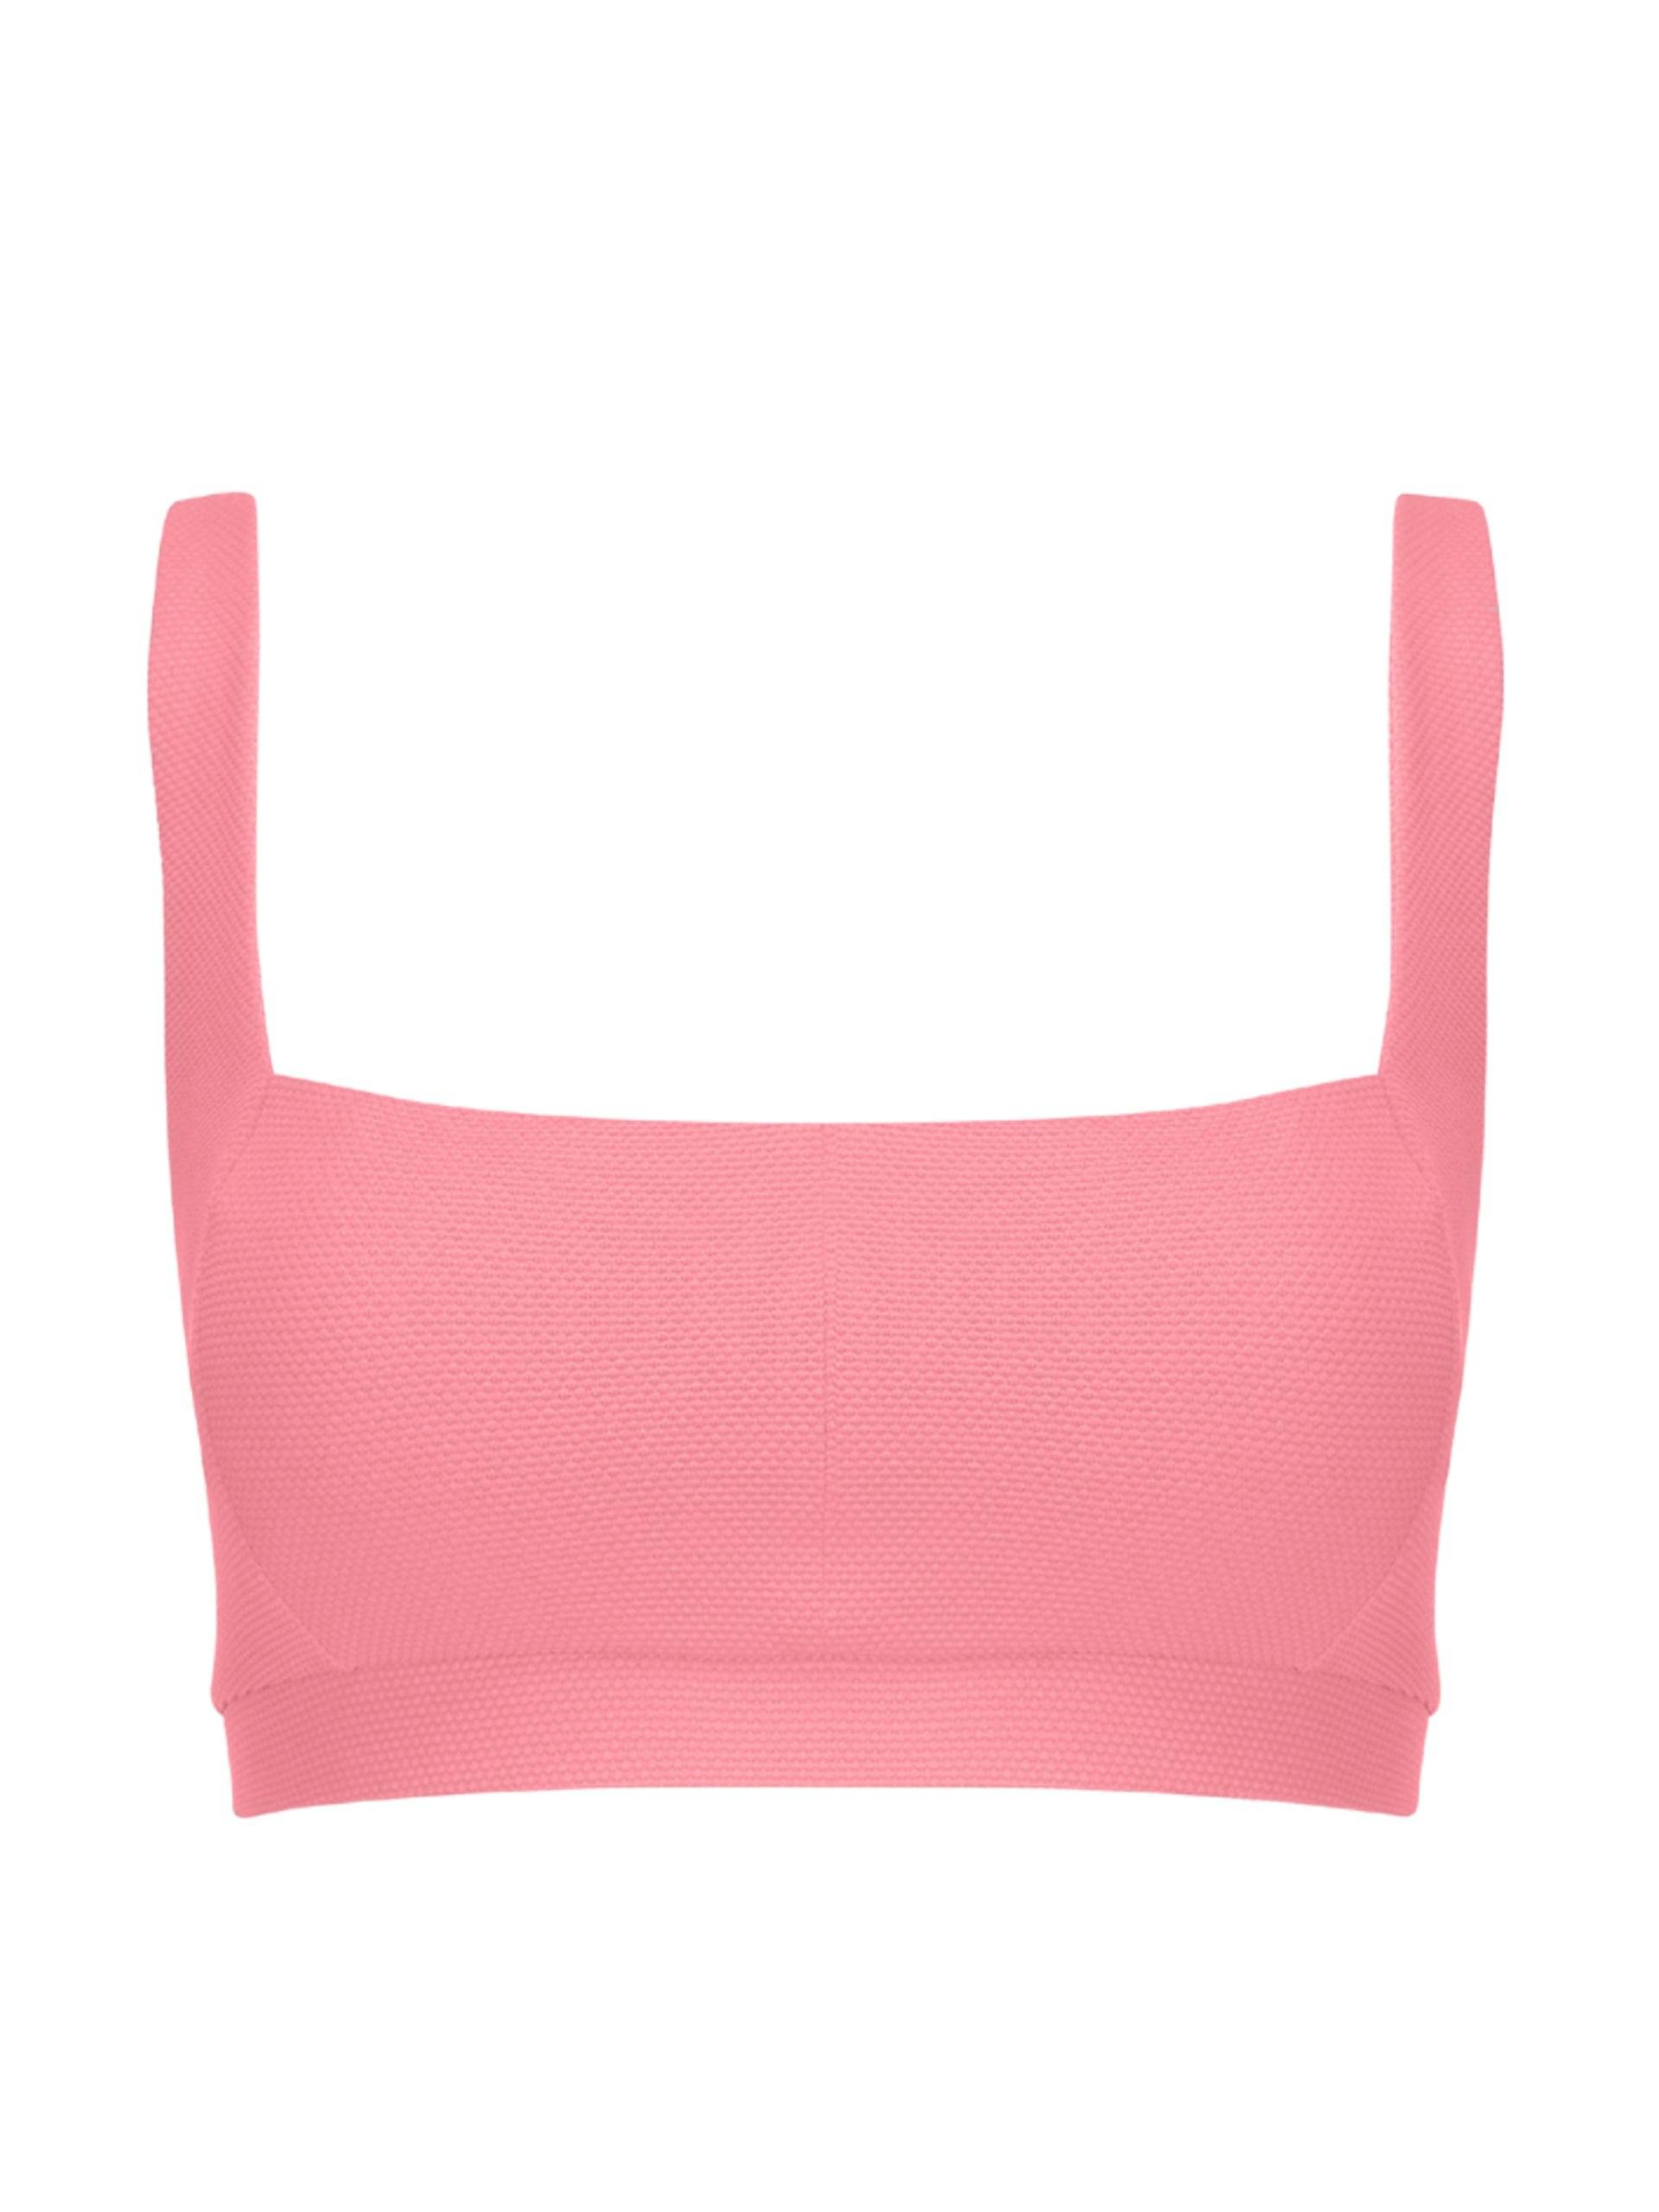 Pink Jessica square necked bikini top